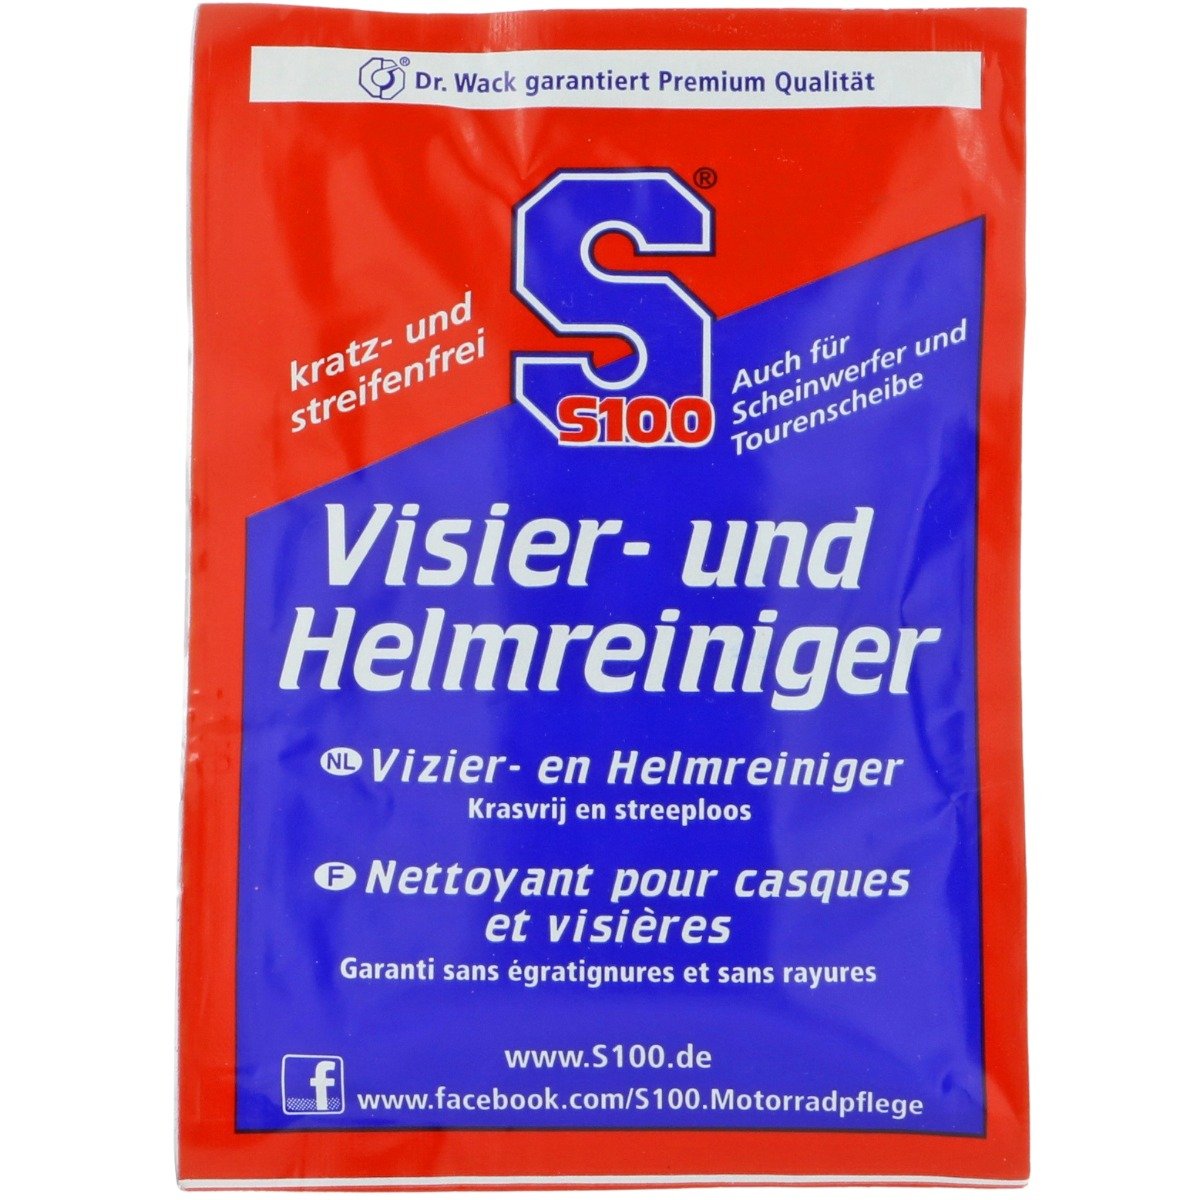 Helm & Vizierreiniger - 1x wipe